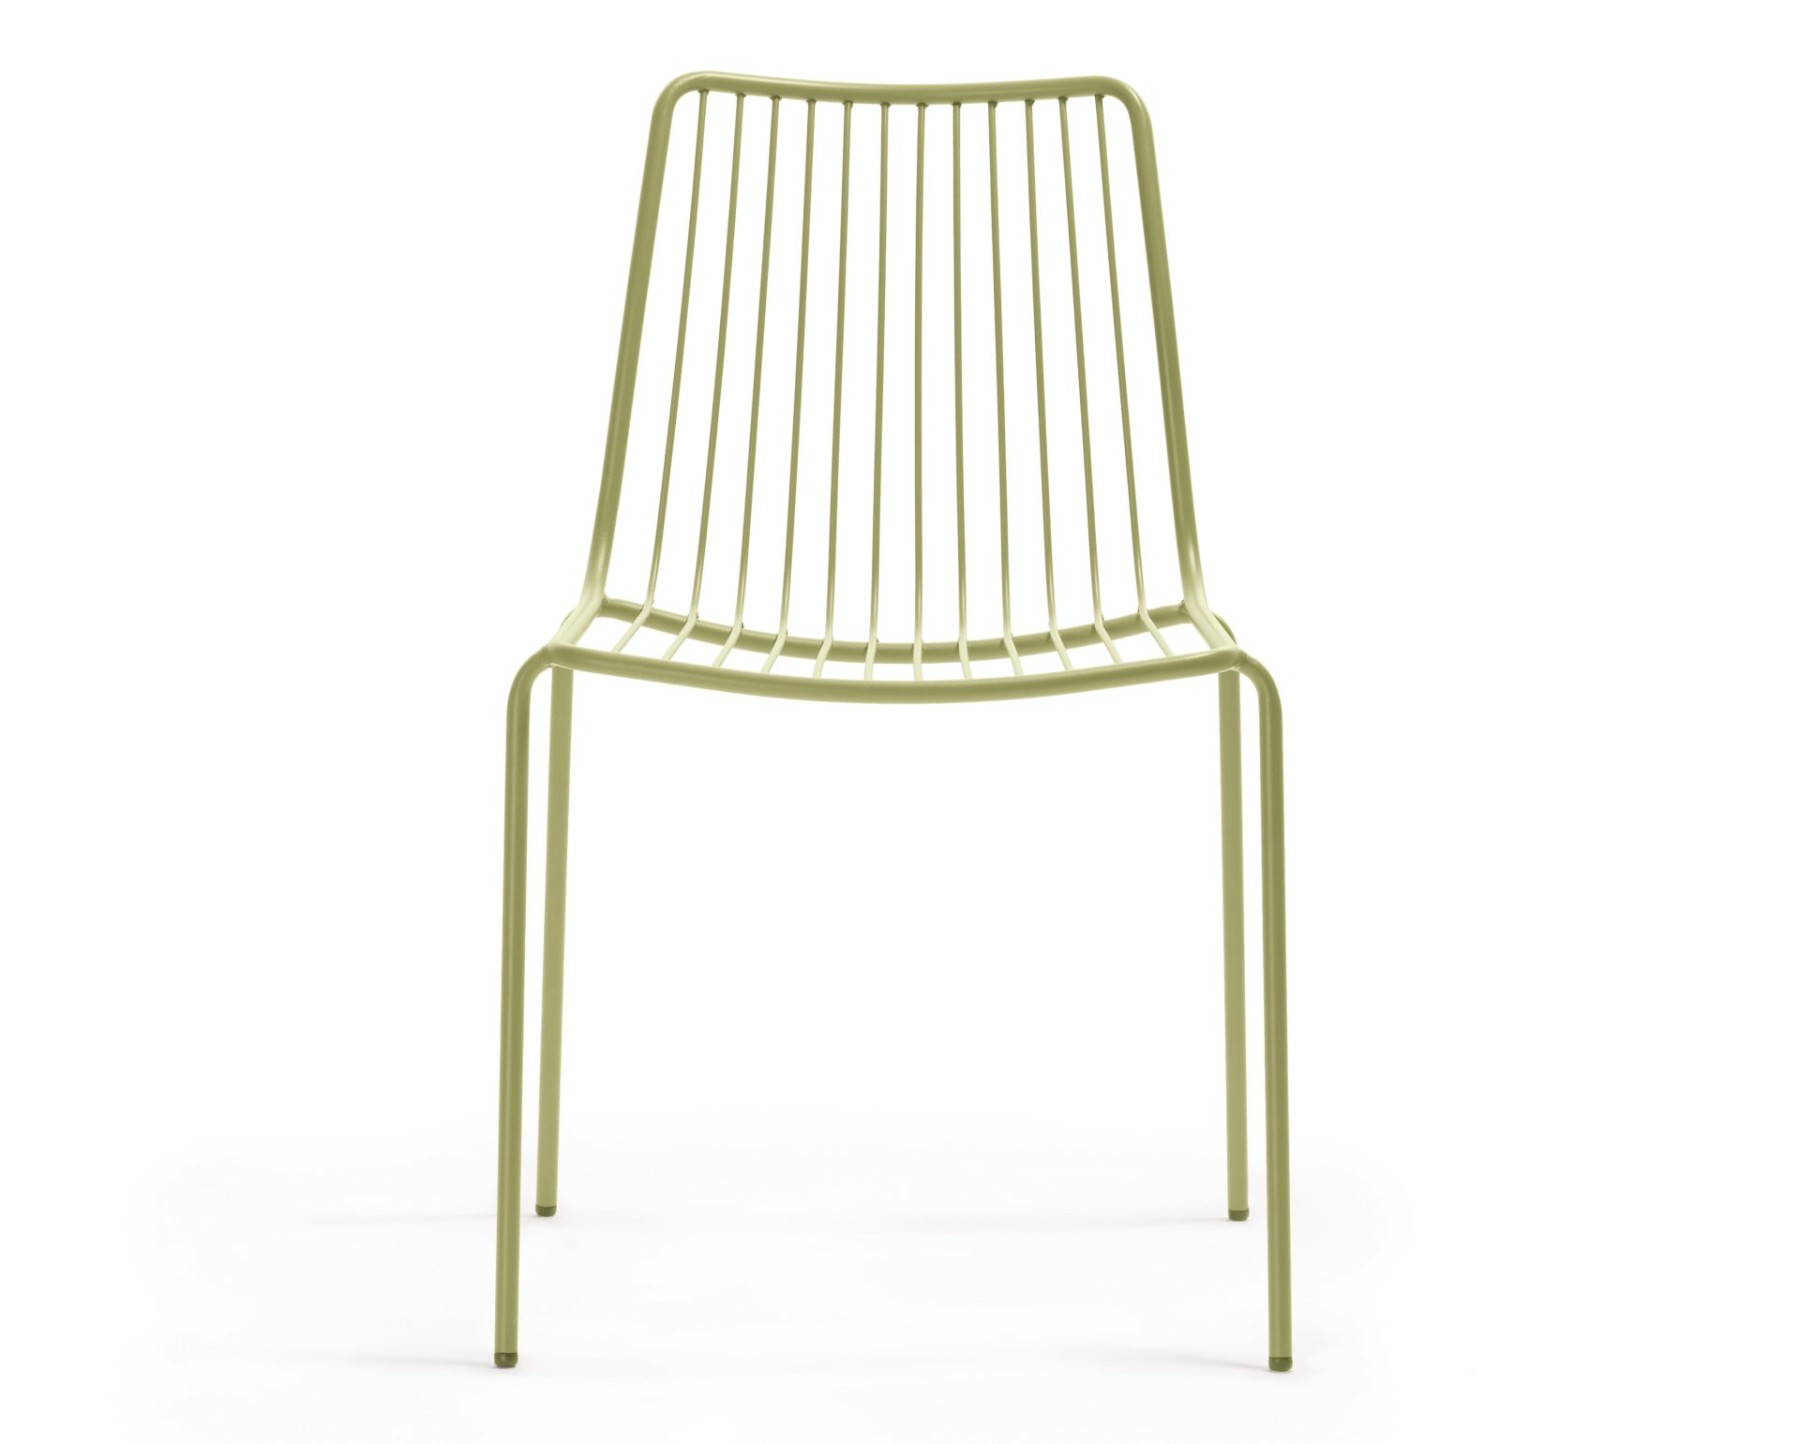 Stuhl grün Metall stapelbar, Gartenstuhl grün Metall 